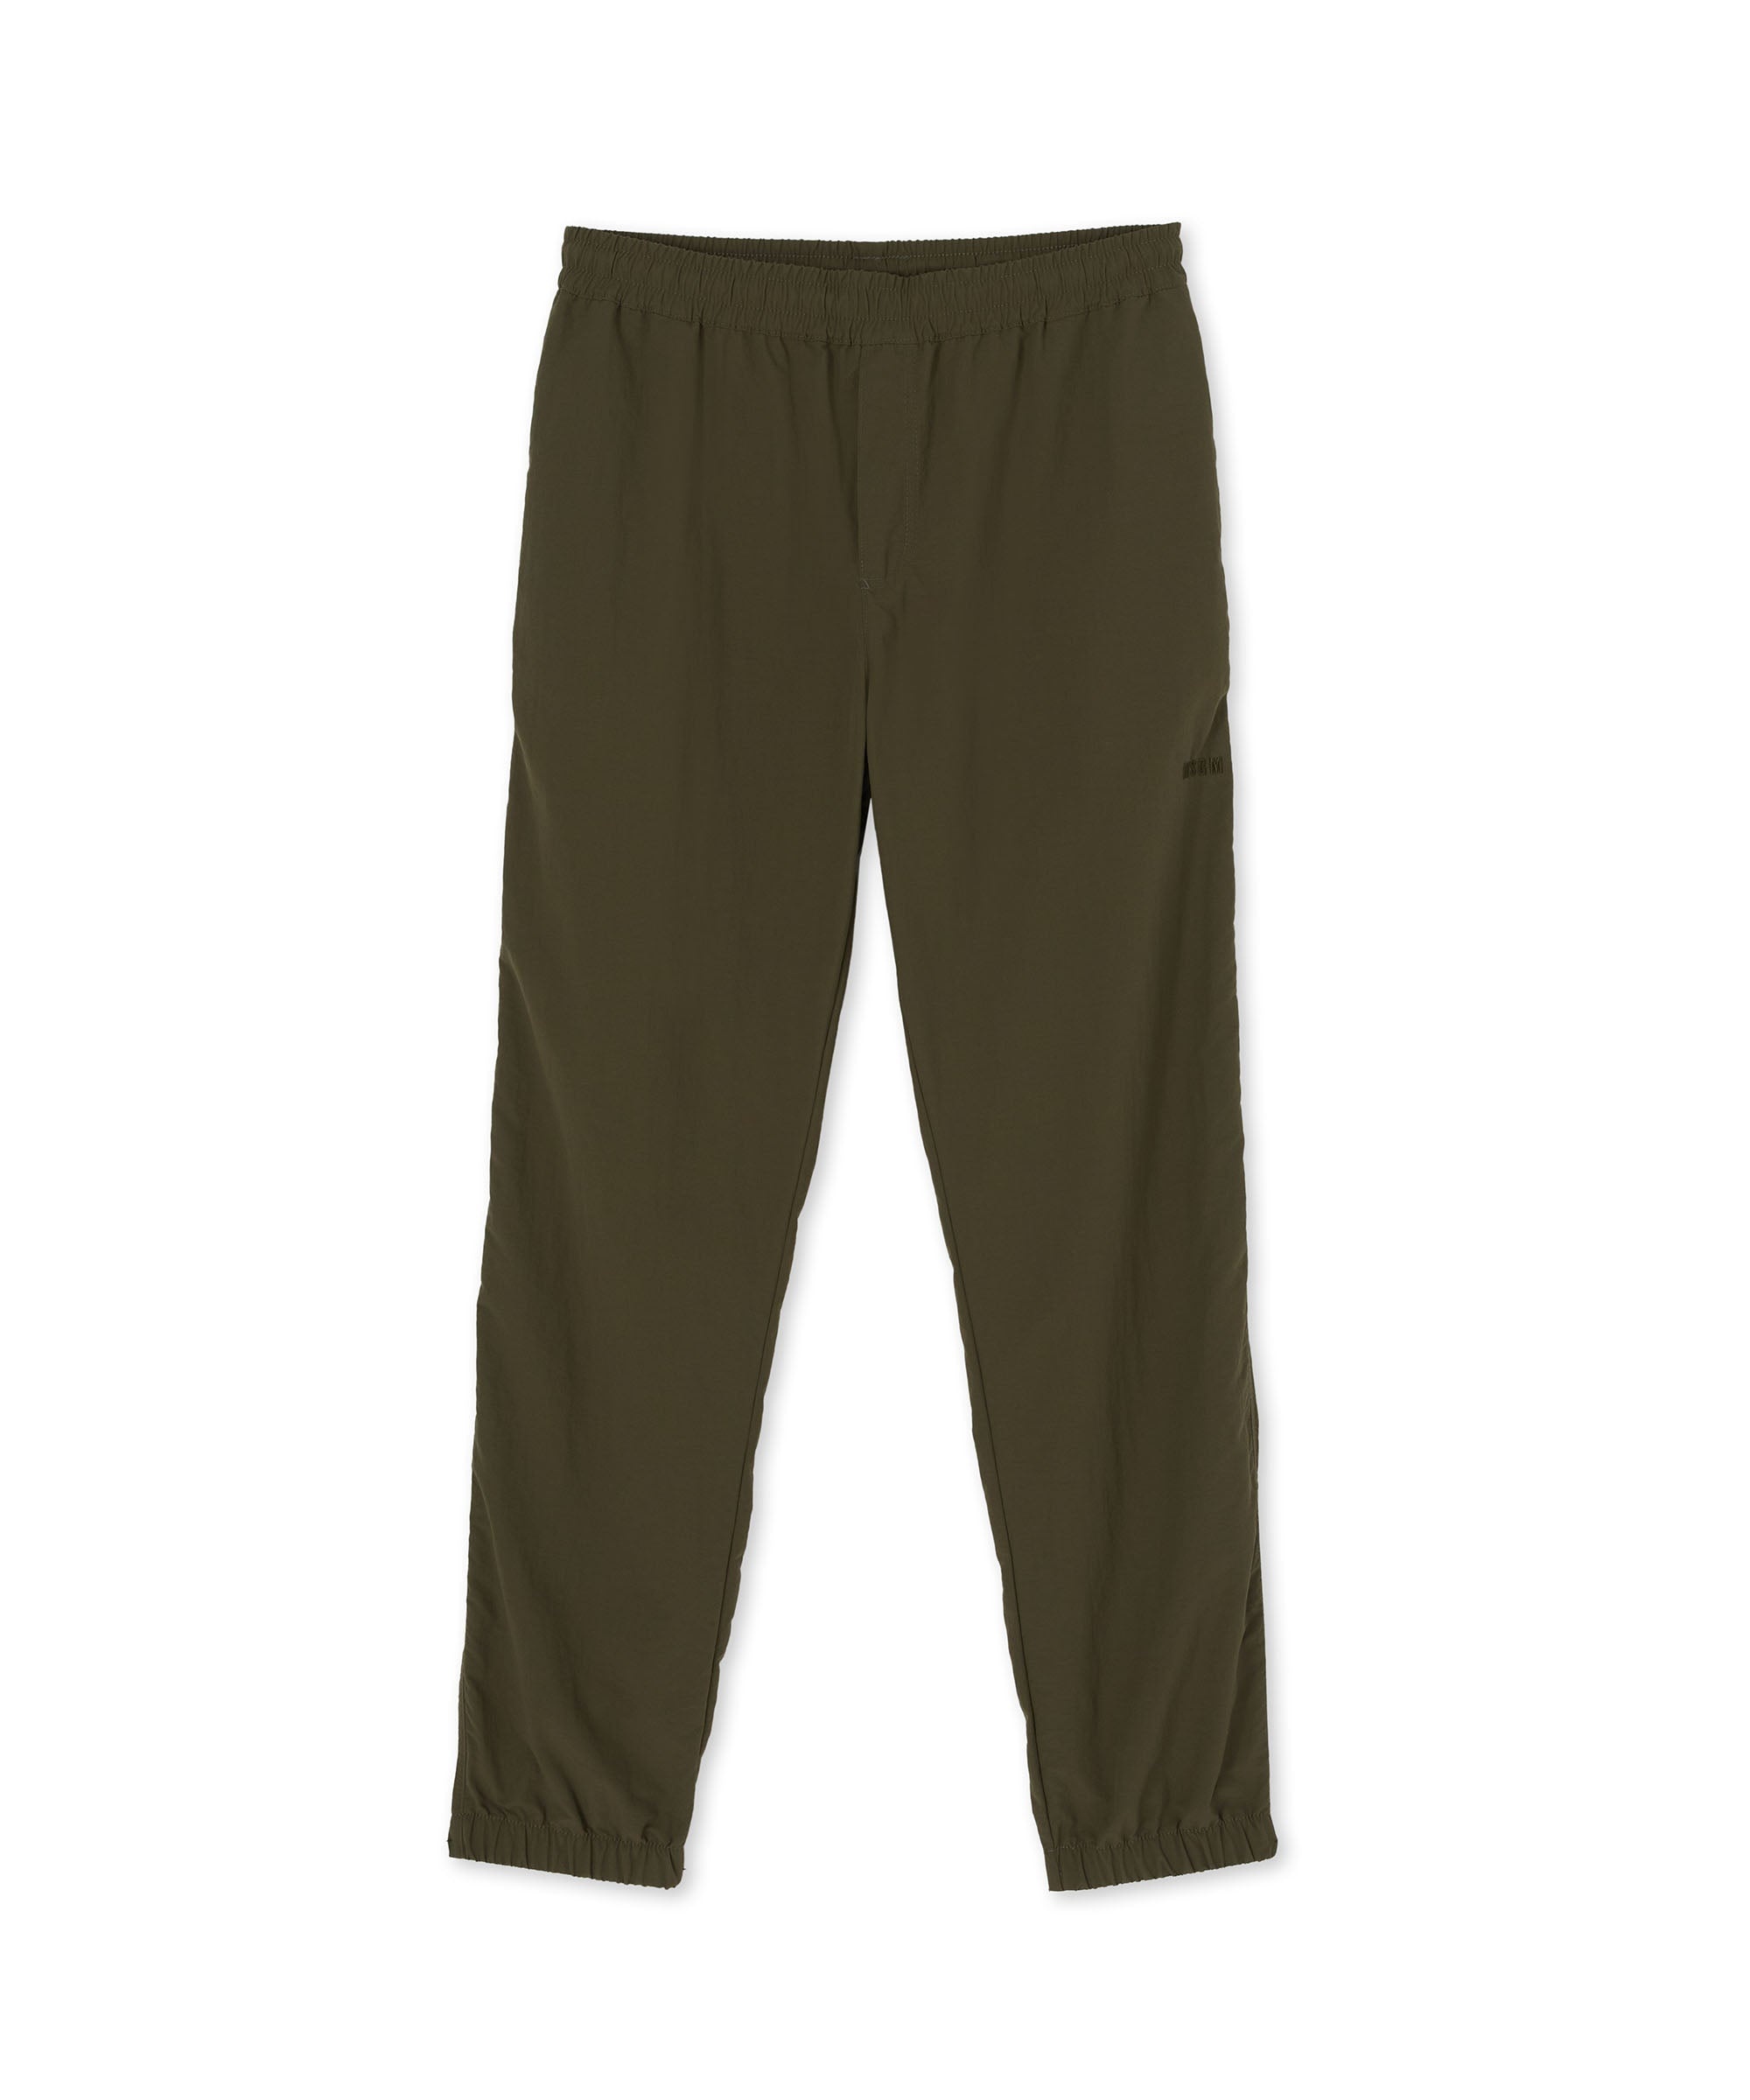 Nylon pants with elasticized waistband - 1